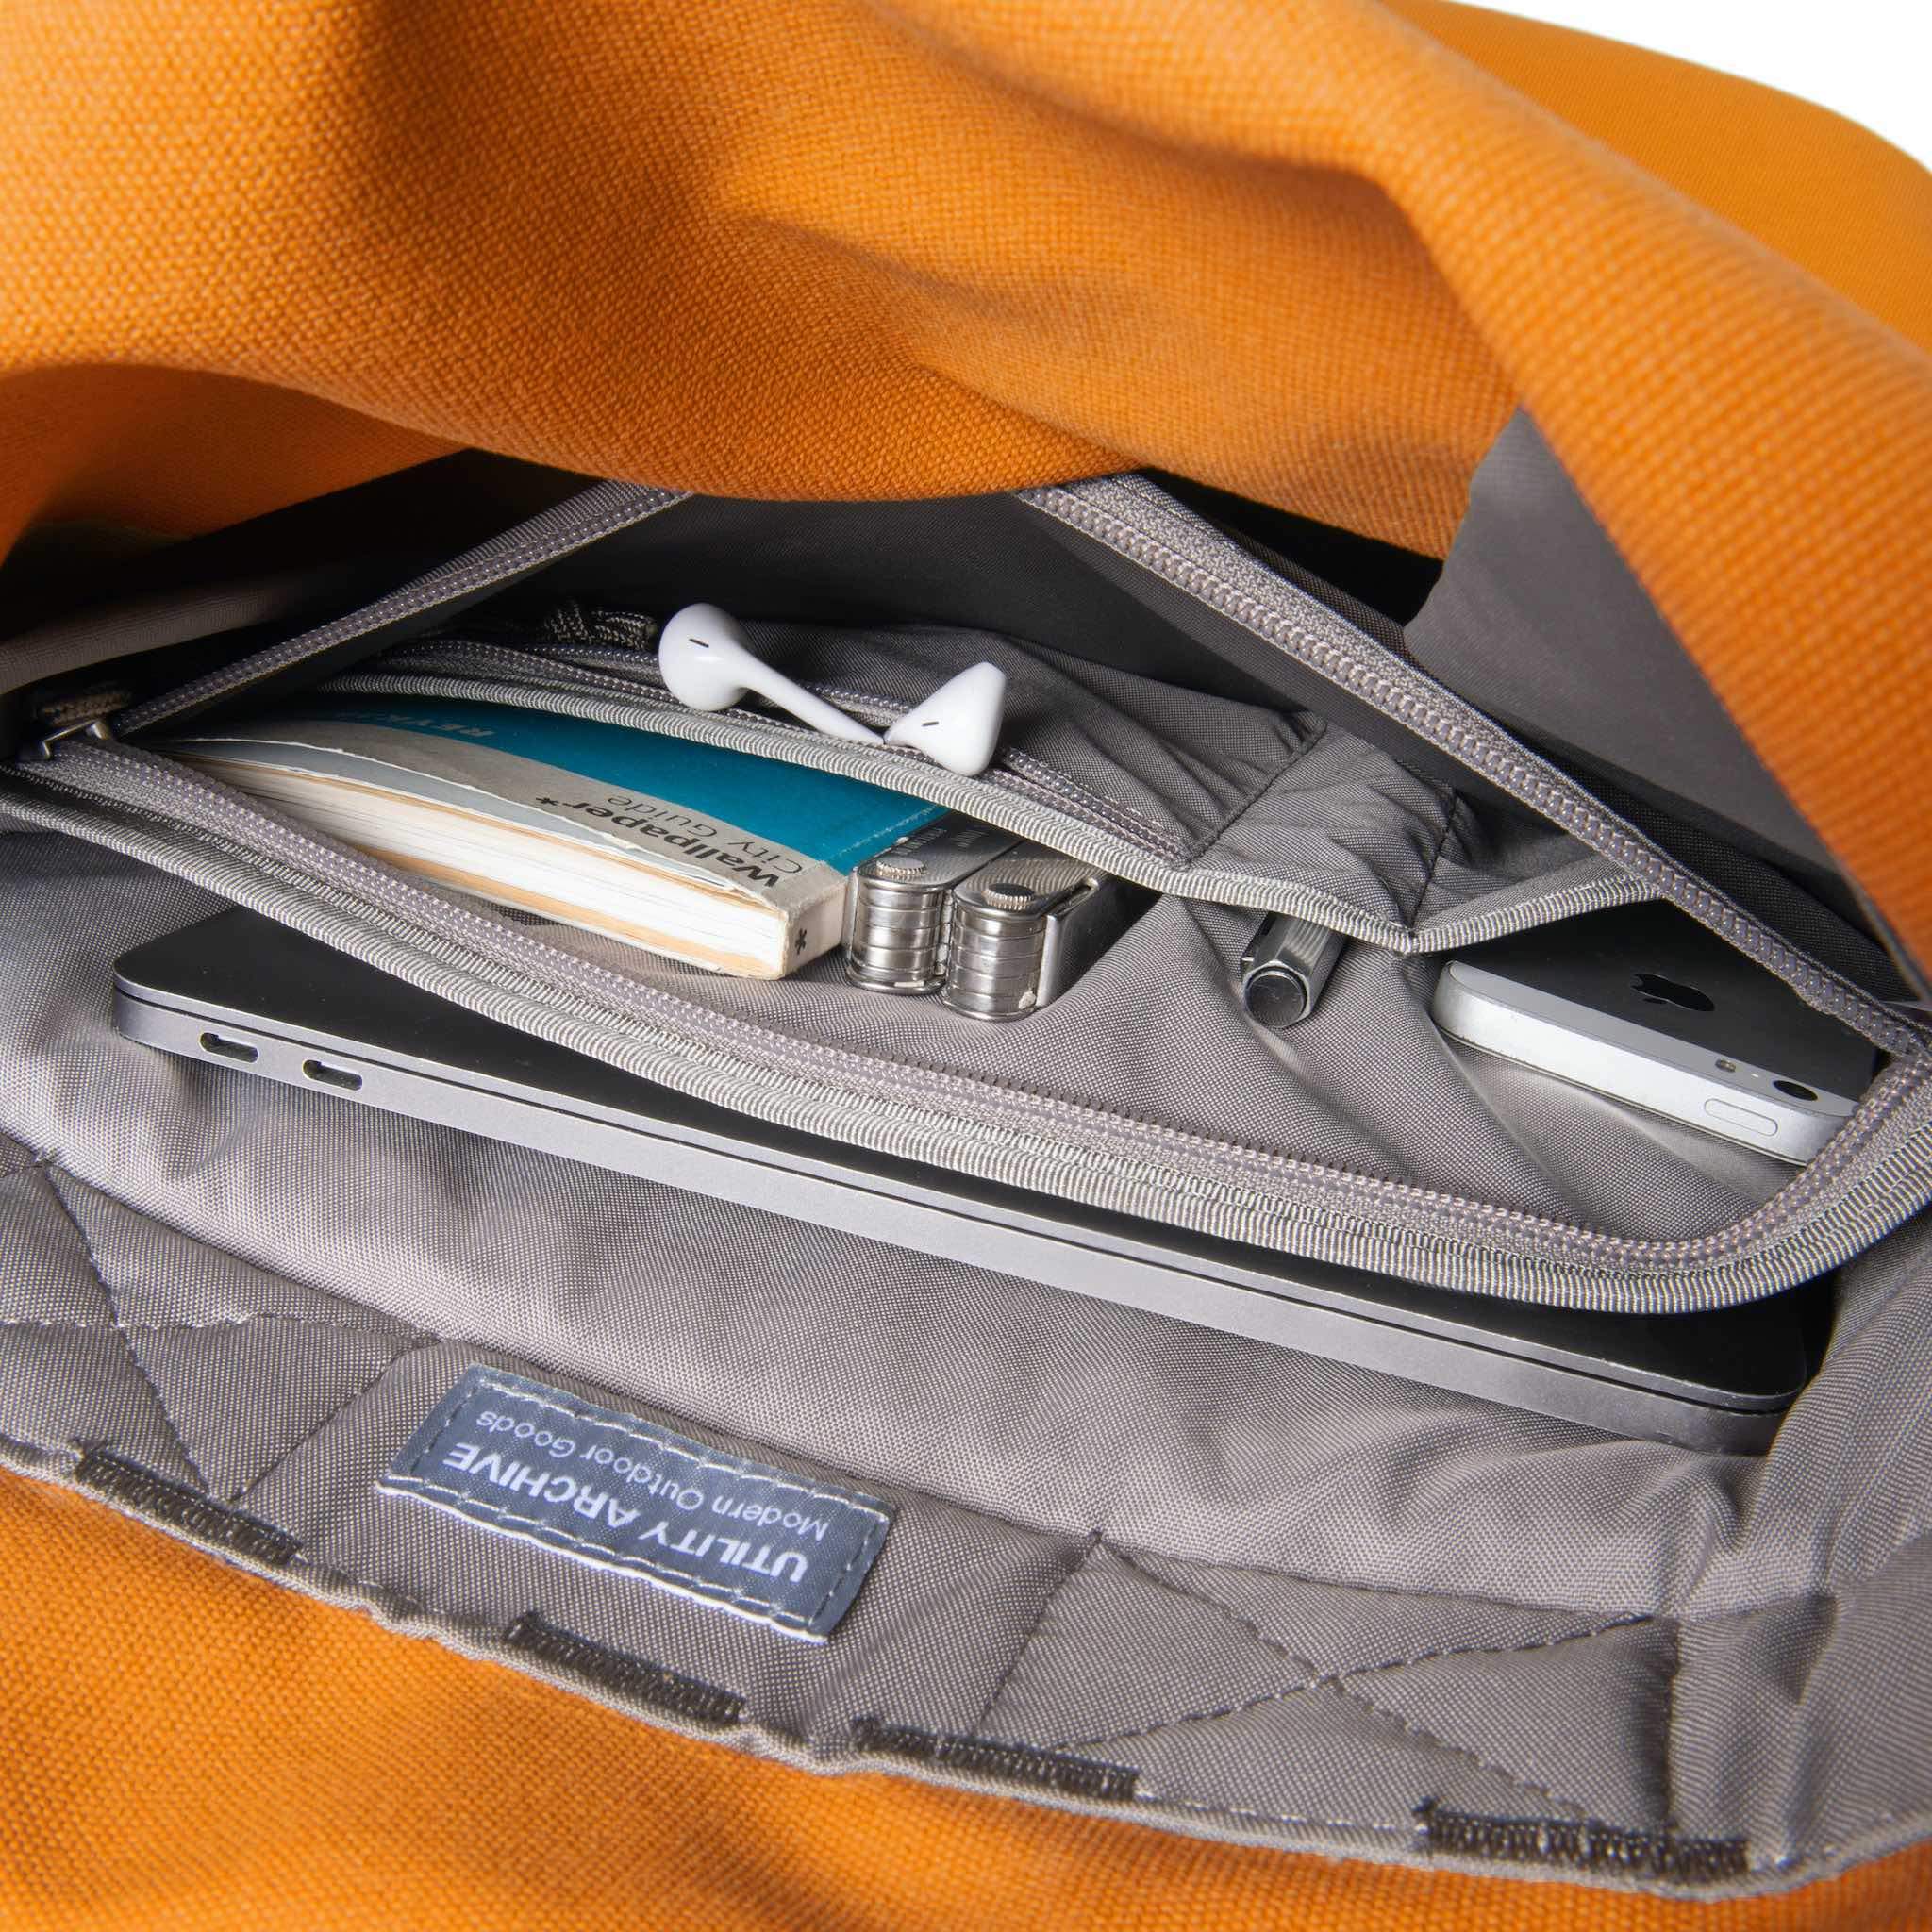 Orange backpack interior organiser pocket with guidebook and earphones.